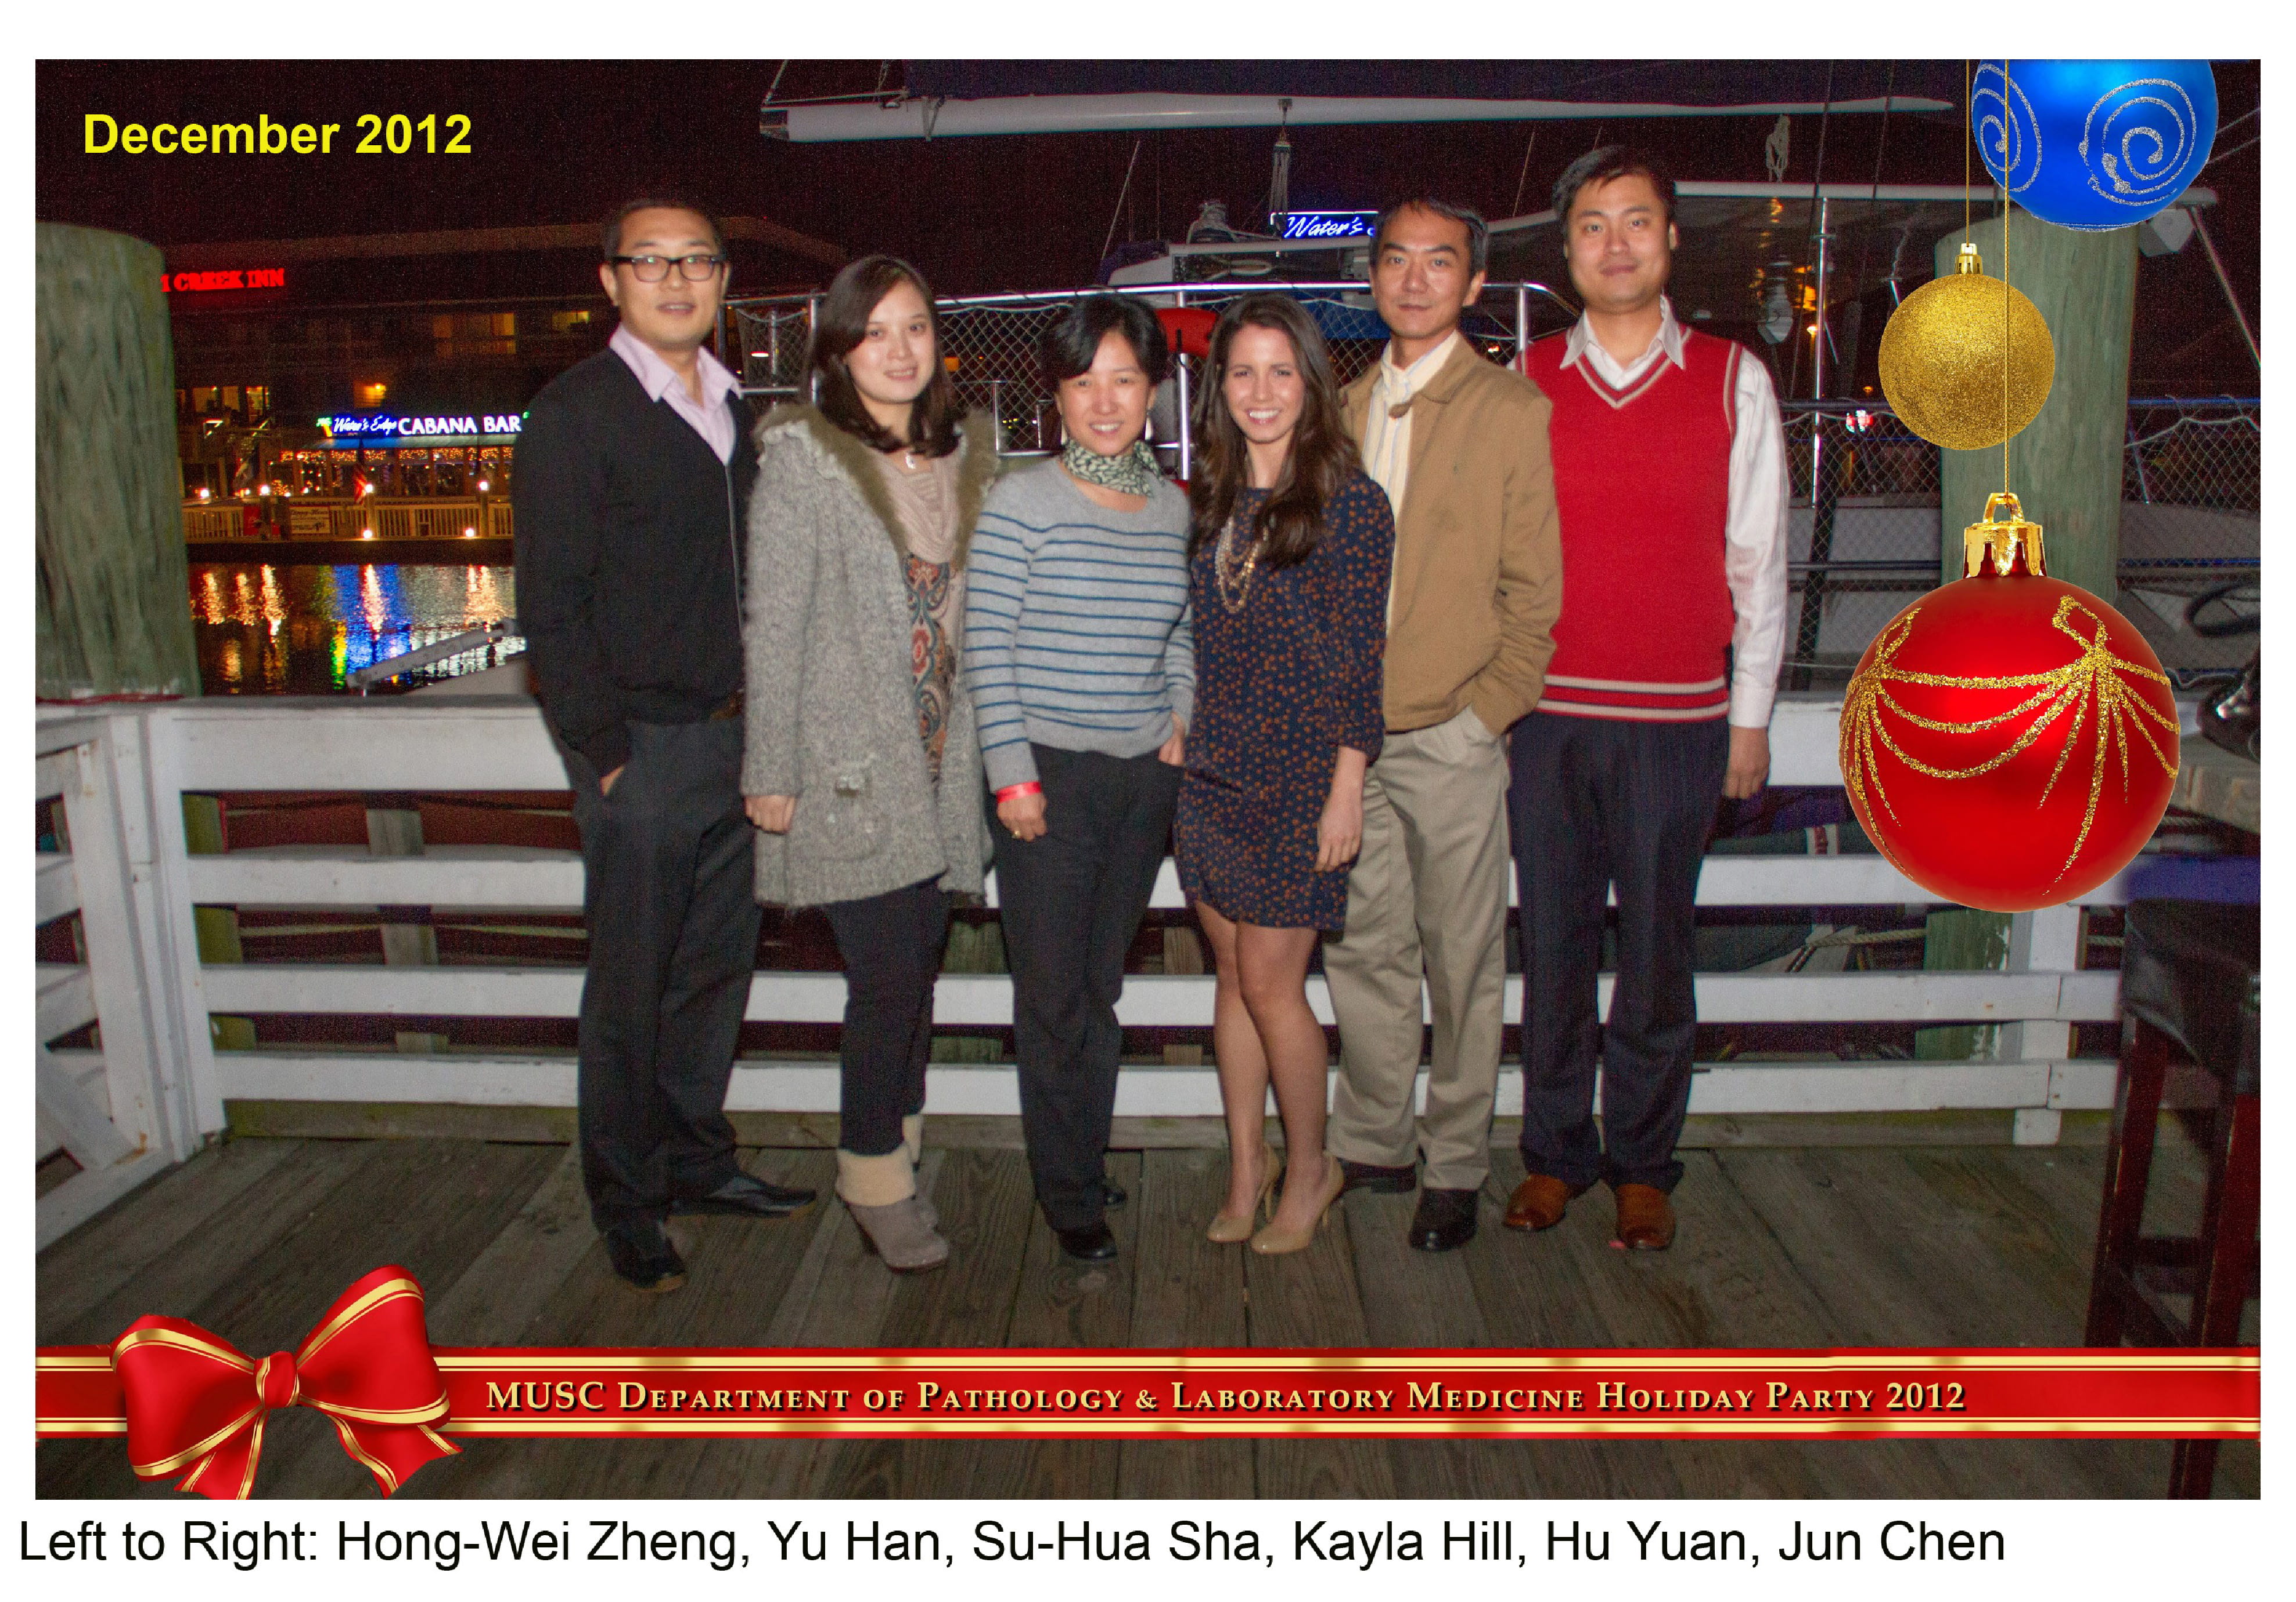 Left to Right: Hong-Wei Zheng, Yu Han, Su-Hua Sha, Kayla Hill, Hu Yuan, Jun Chen